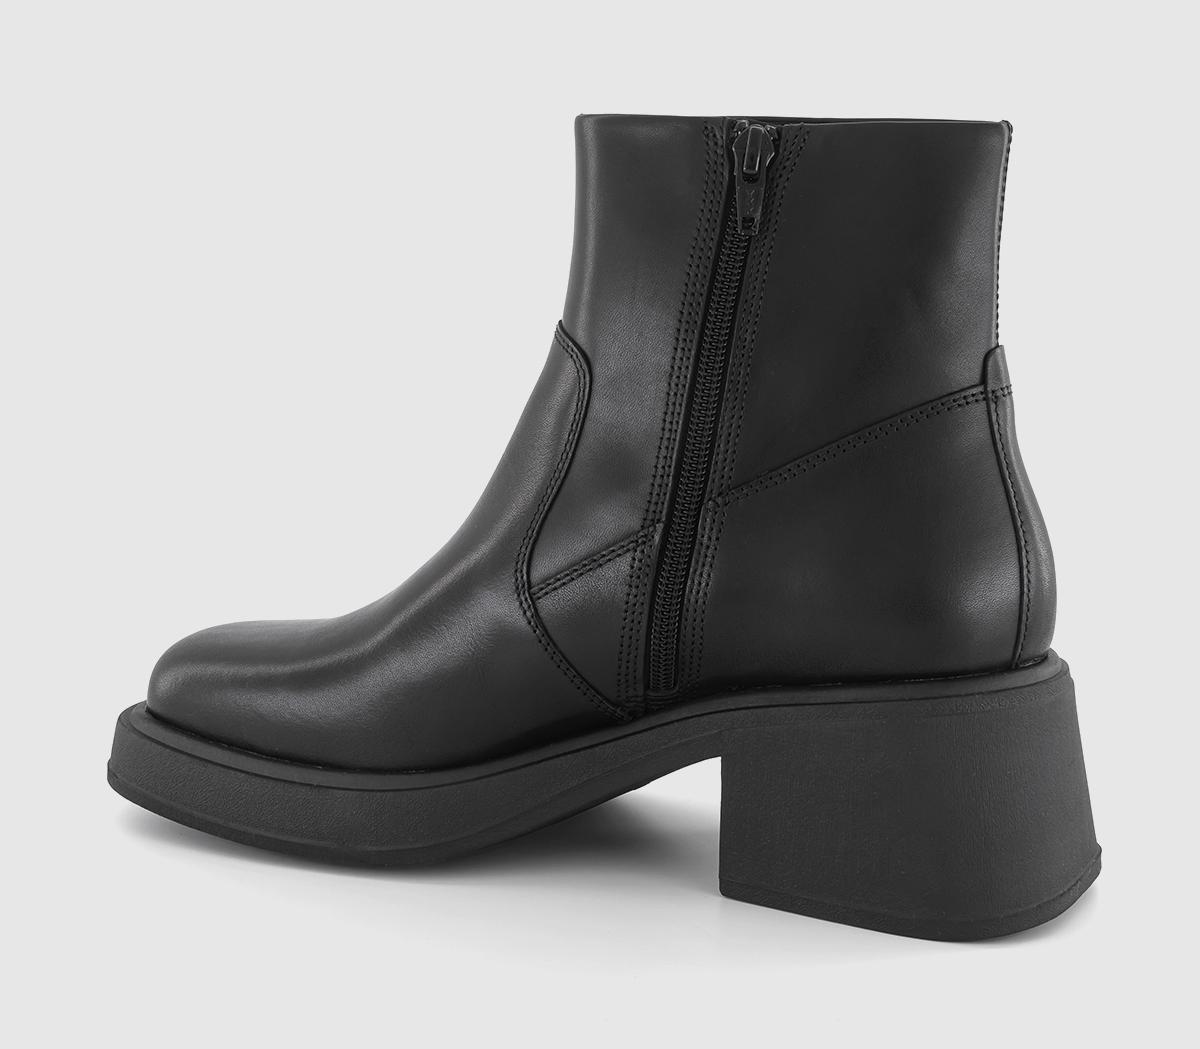 Vagabond Shoemakers Dorah Ankle Boots Black - Women's Leather Boots